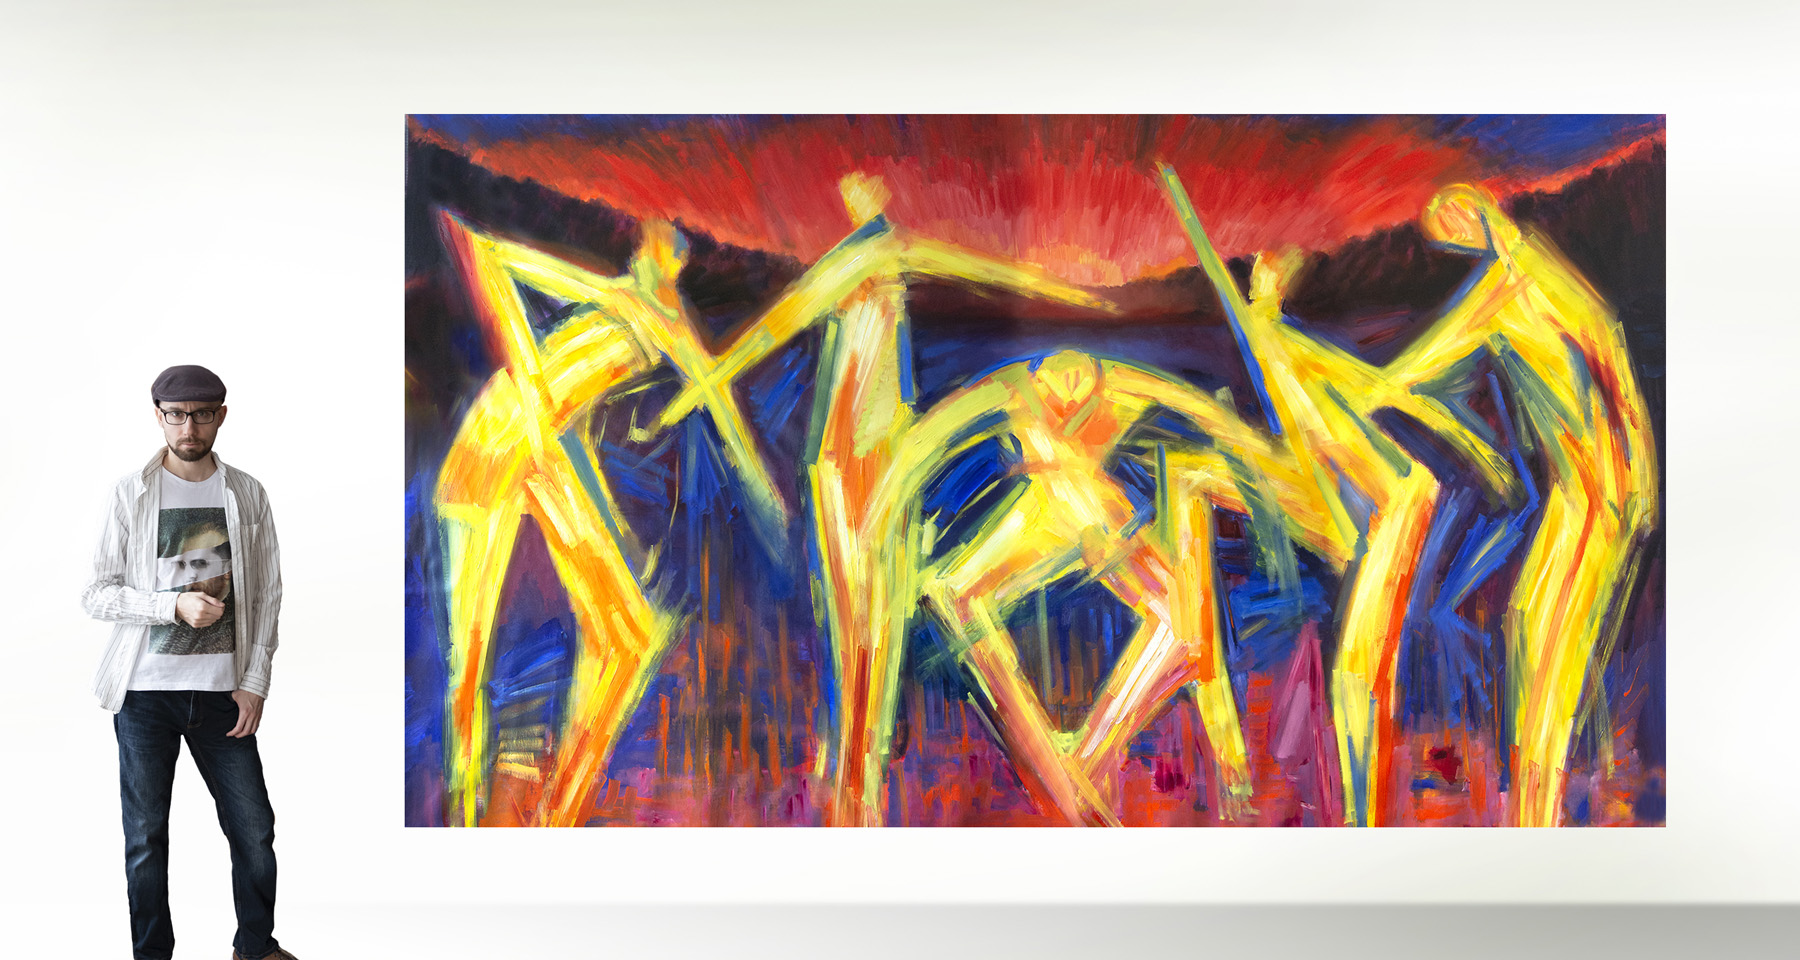 M. Cieśla: "Archetyp, Tanz für die aufgehende Sonne", Original/Unikat, expressionistisches Ölgemälde